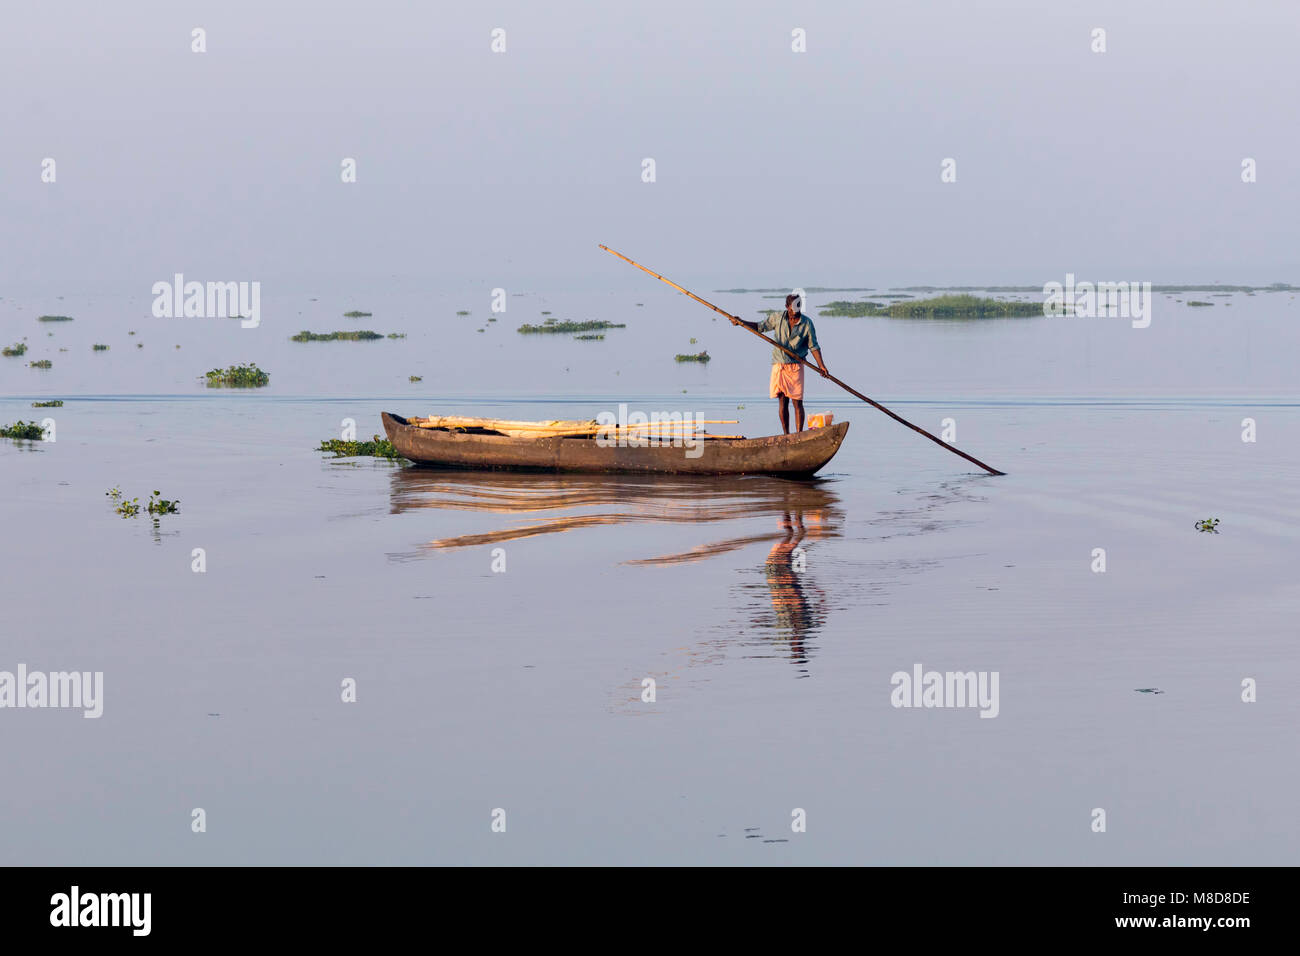 Fisherman at work, early morning just after dawn at Vembanad Lake, Kumarakom, Kerala, India Stock Photo